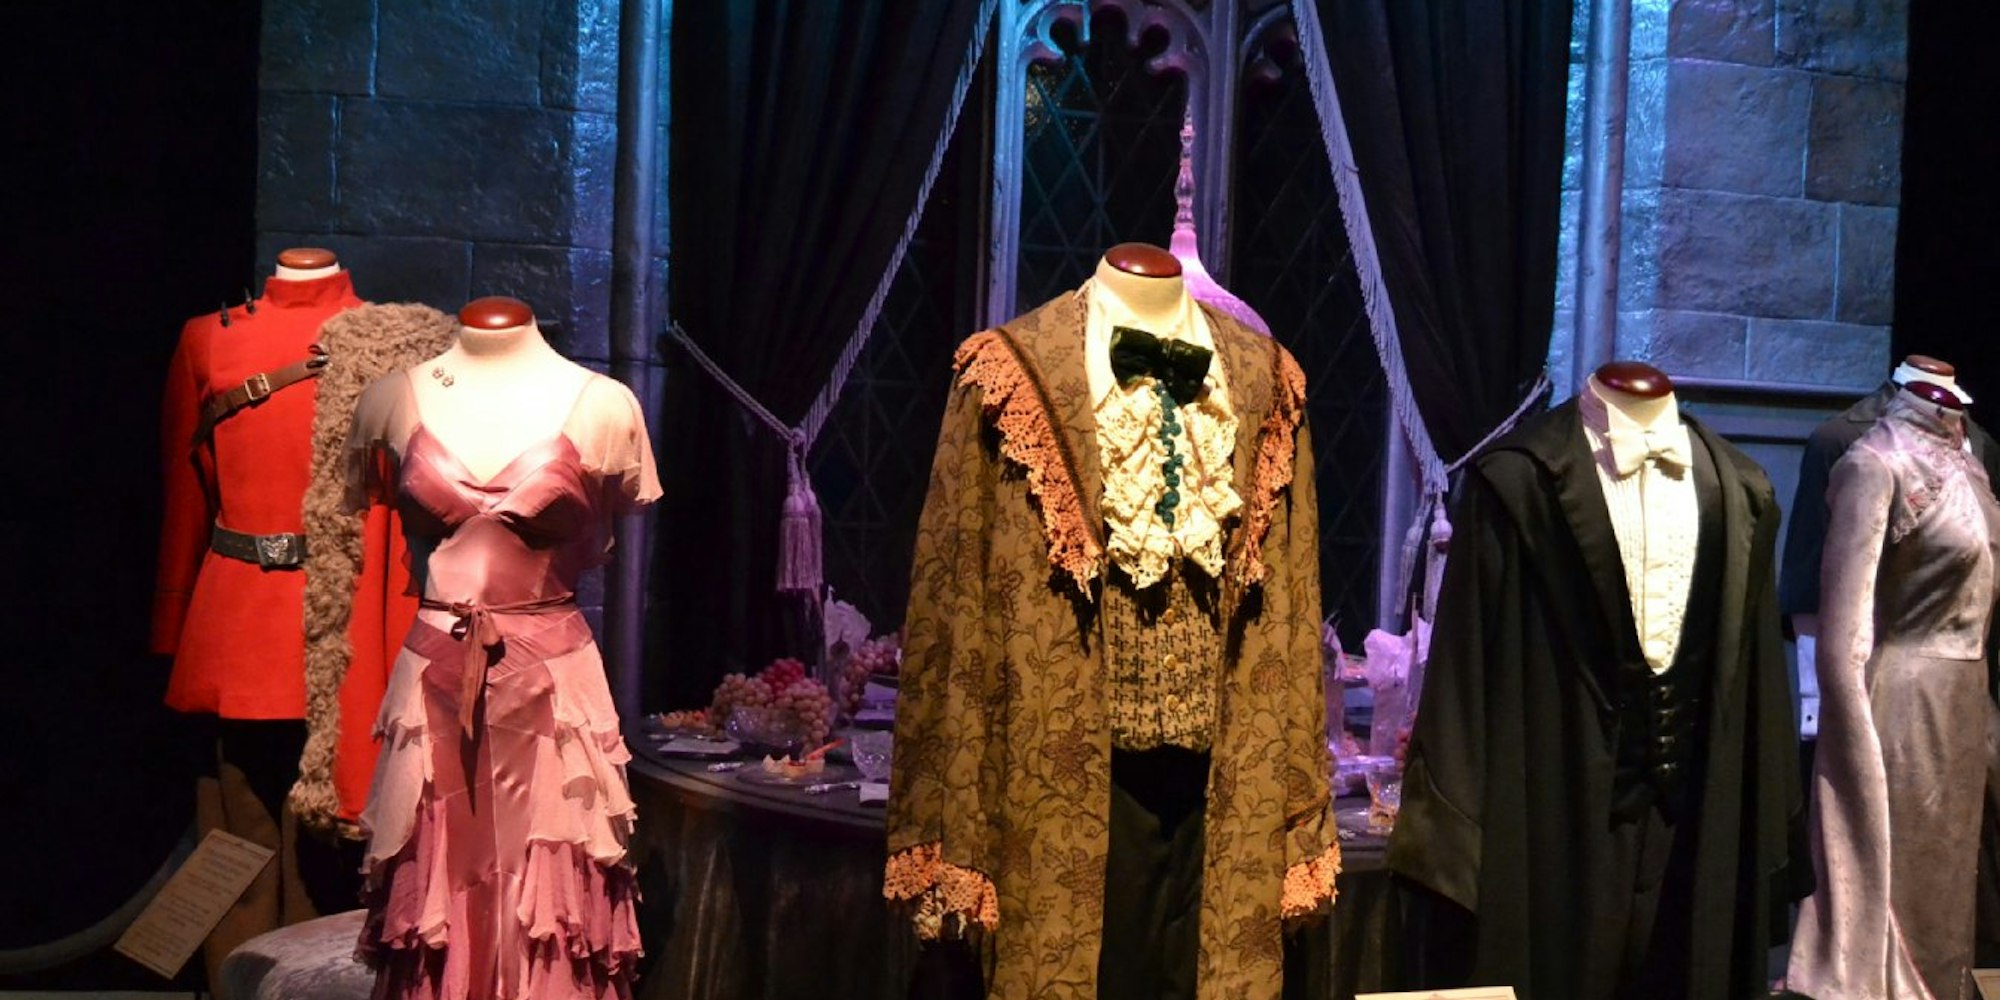 Attraktion für die Fans der jungen Zauberer: Im Odysseum werden zahlreiche Original-Kostüme gezeigt, die Harry, Ron, Hermine oder ihre Lehrer getragen haben.